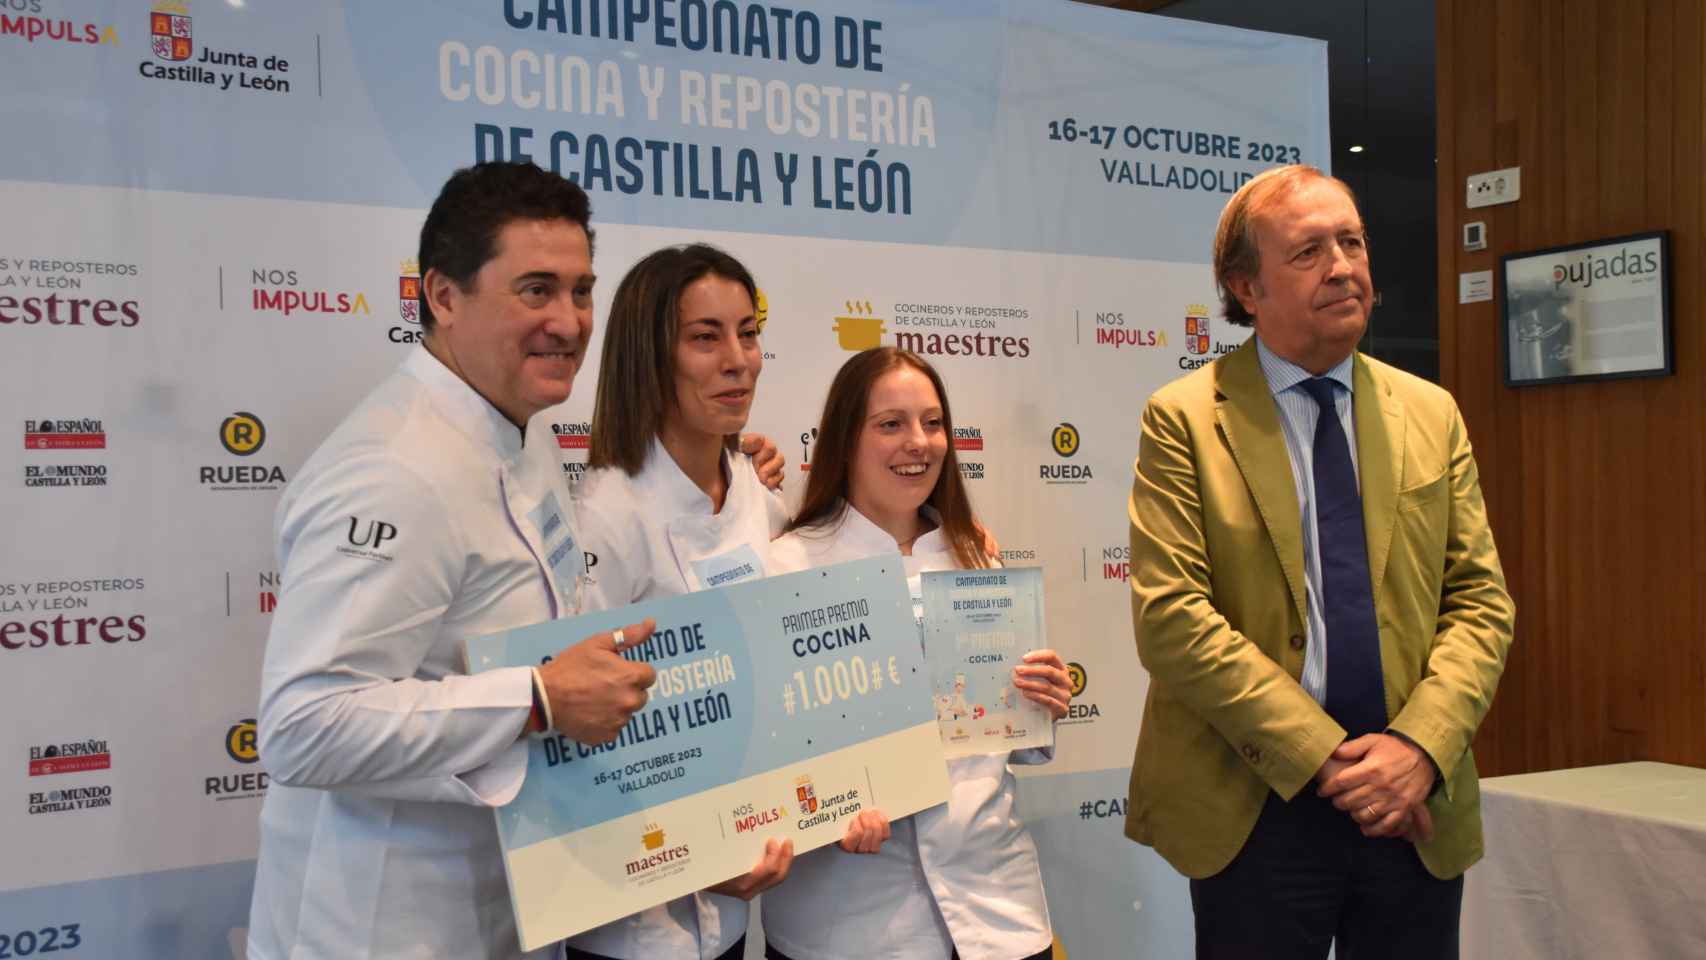 Sara Cámara recibiendo el premio del Campeonato de Cocina y Repostería de Castilla y León